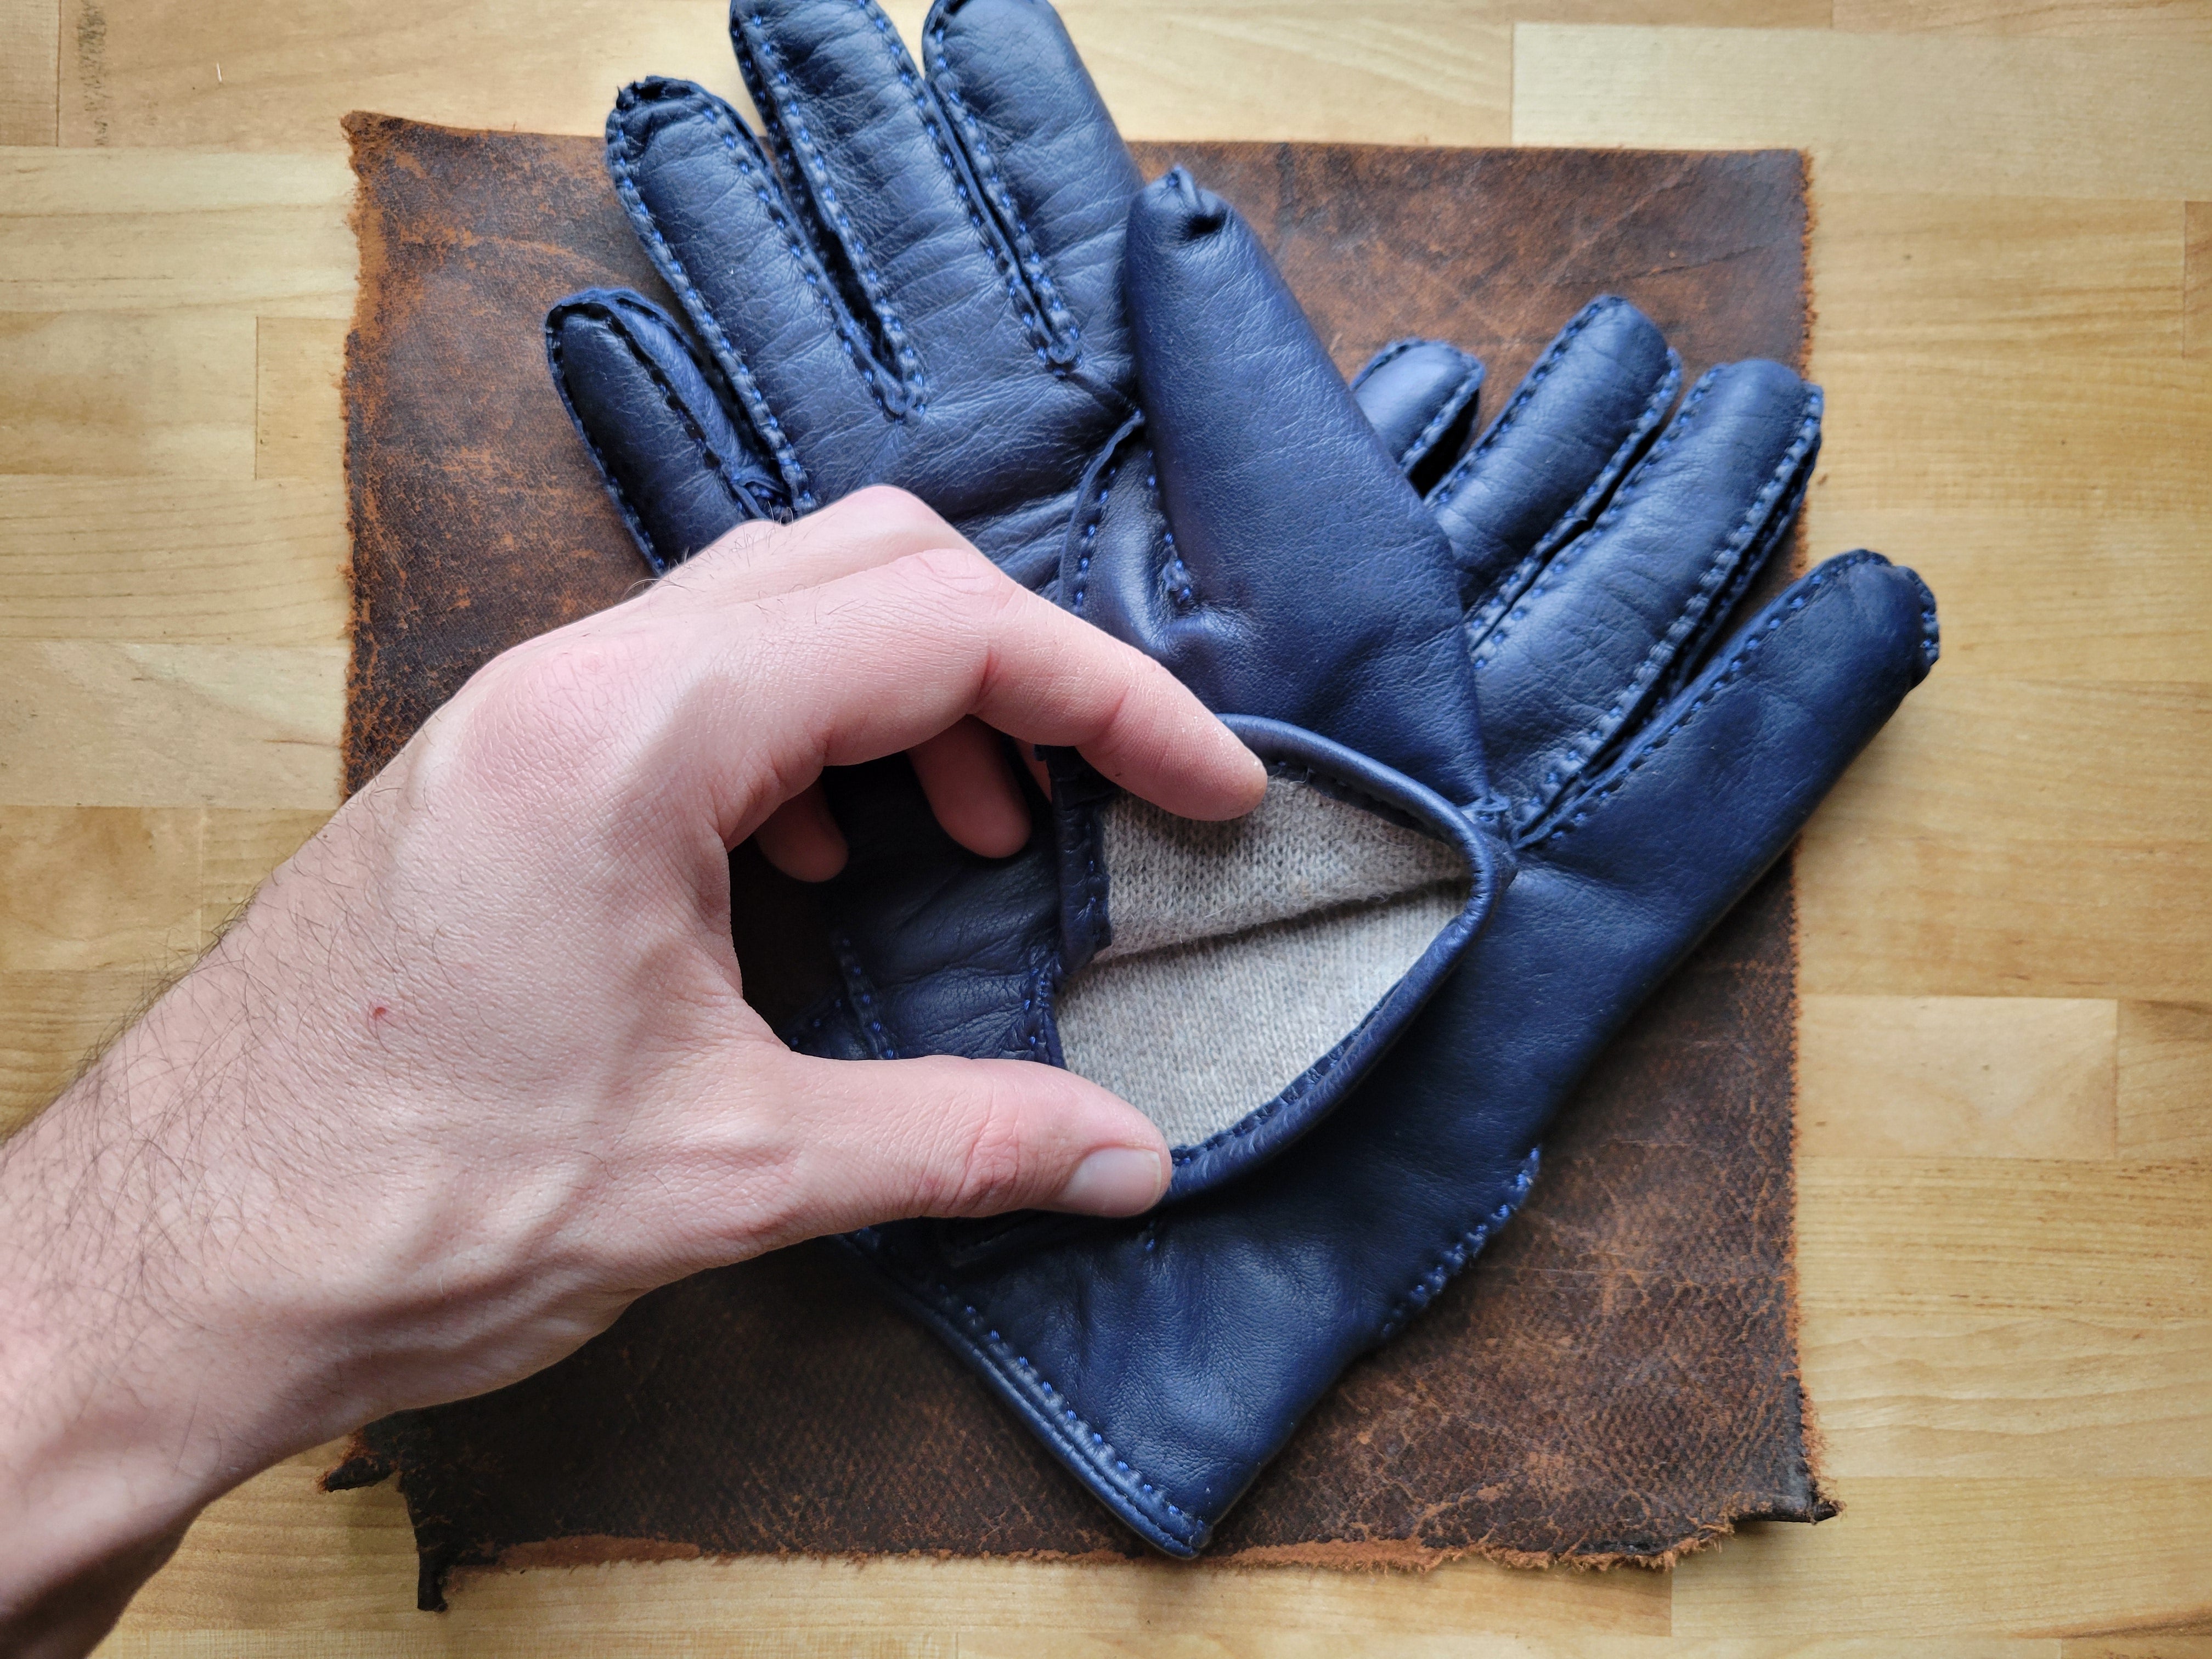 Hand-Stitched Gloves - Navy Sheepskin